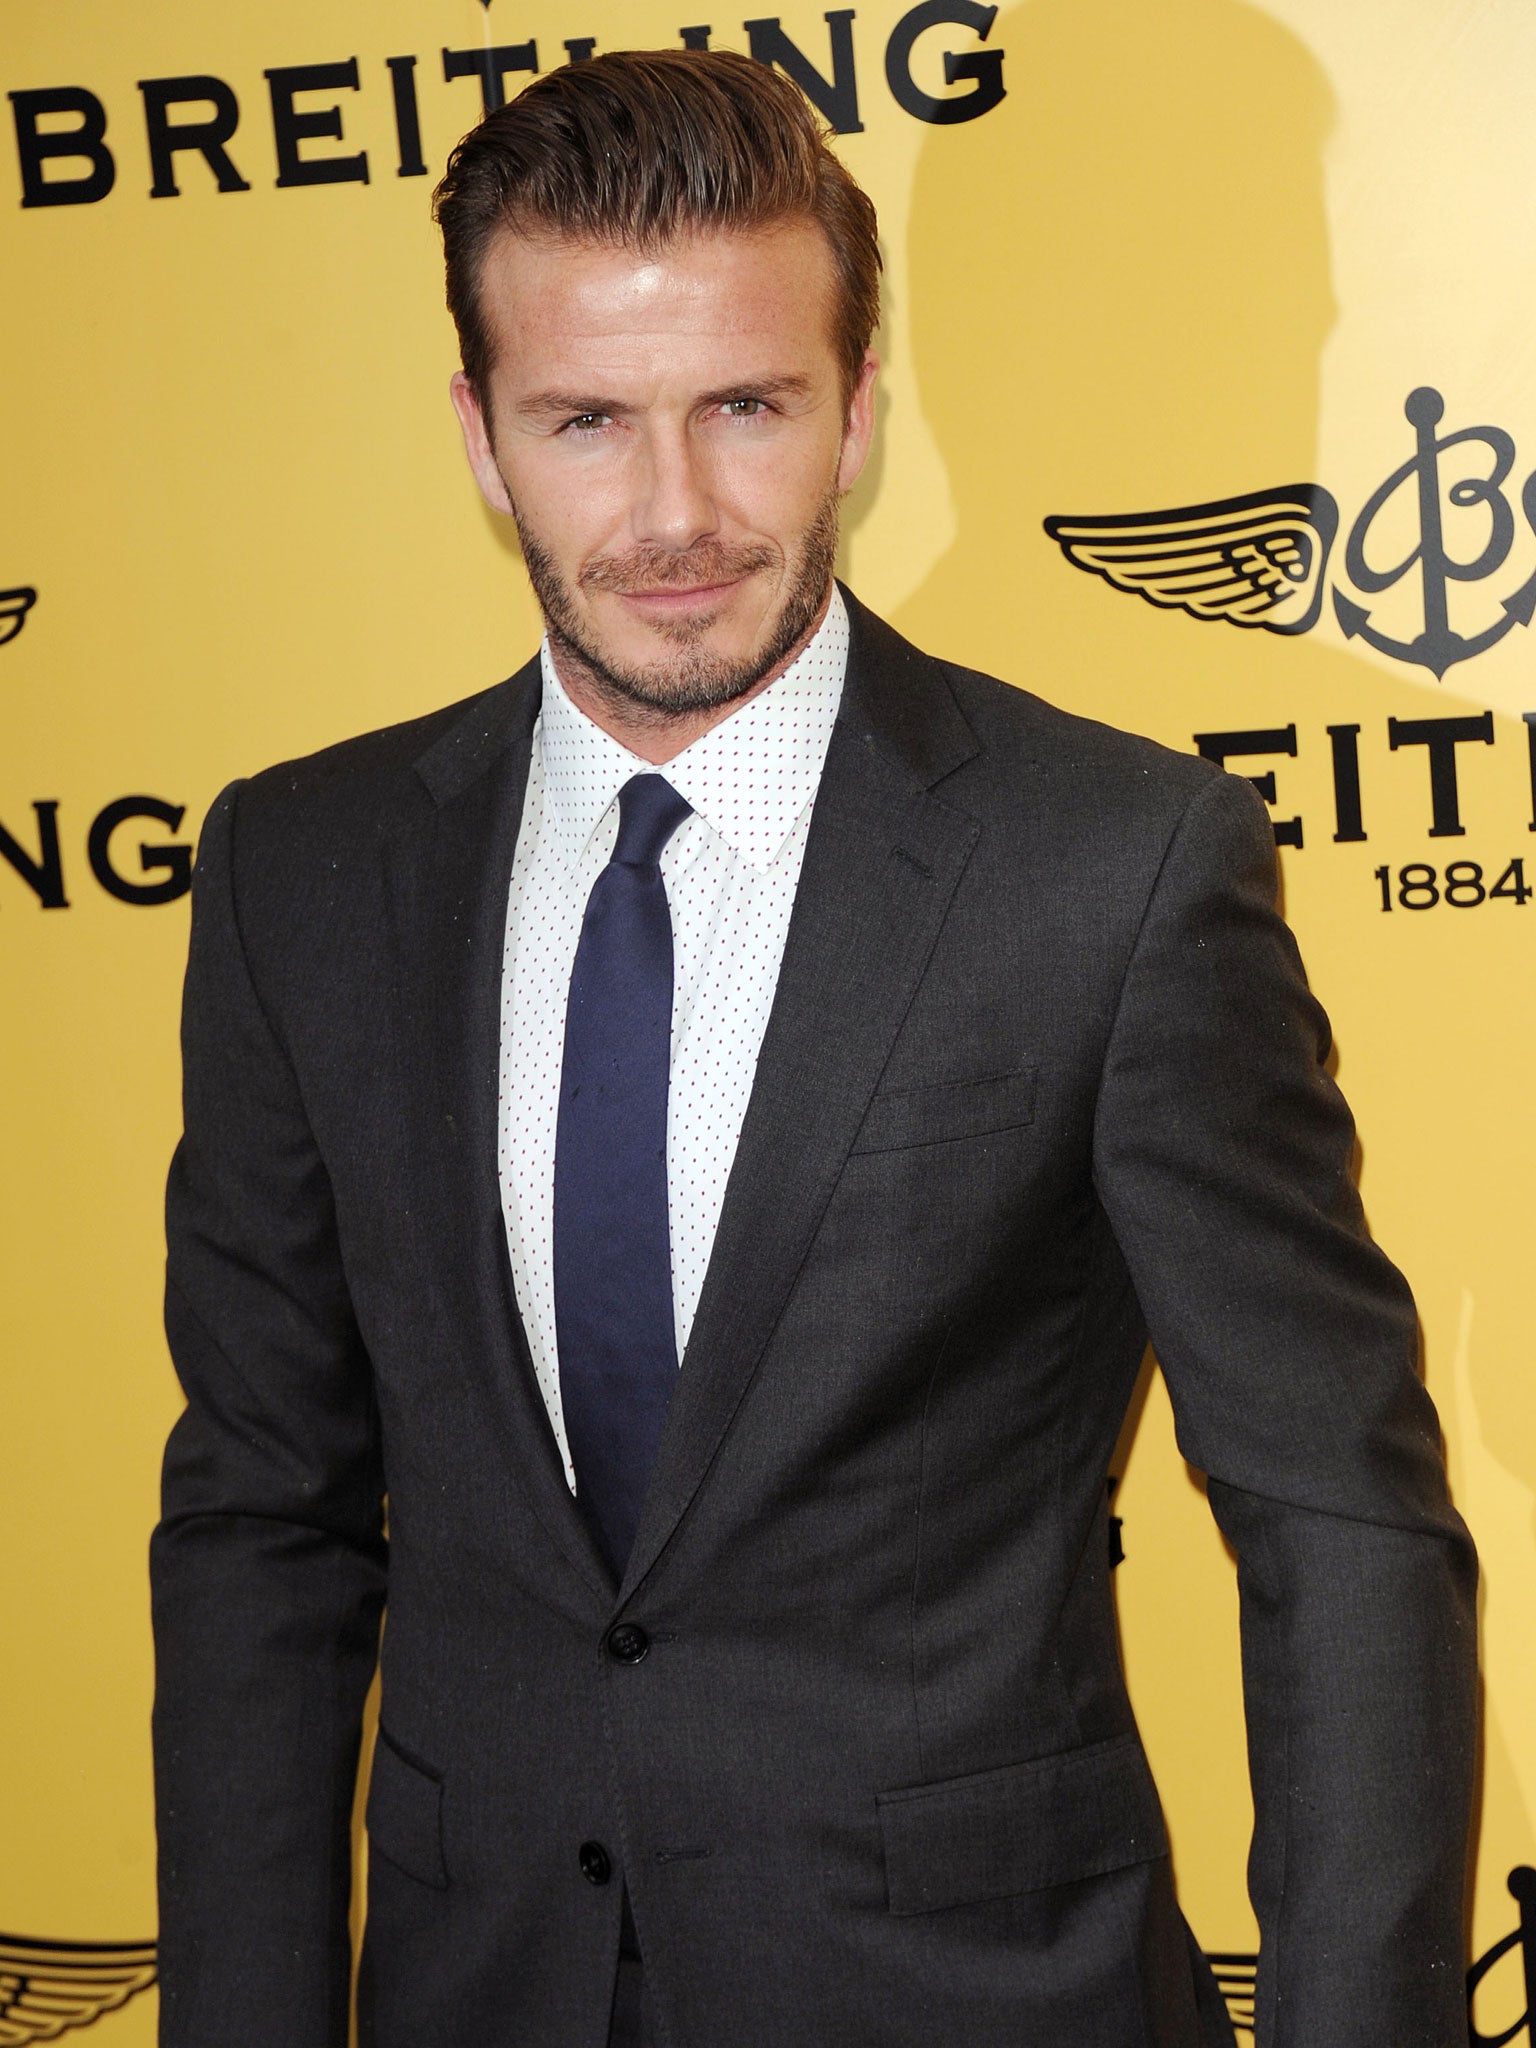 David Beckham involved in Beverley Hills car crash | The Independent ...